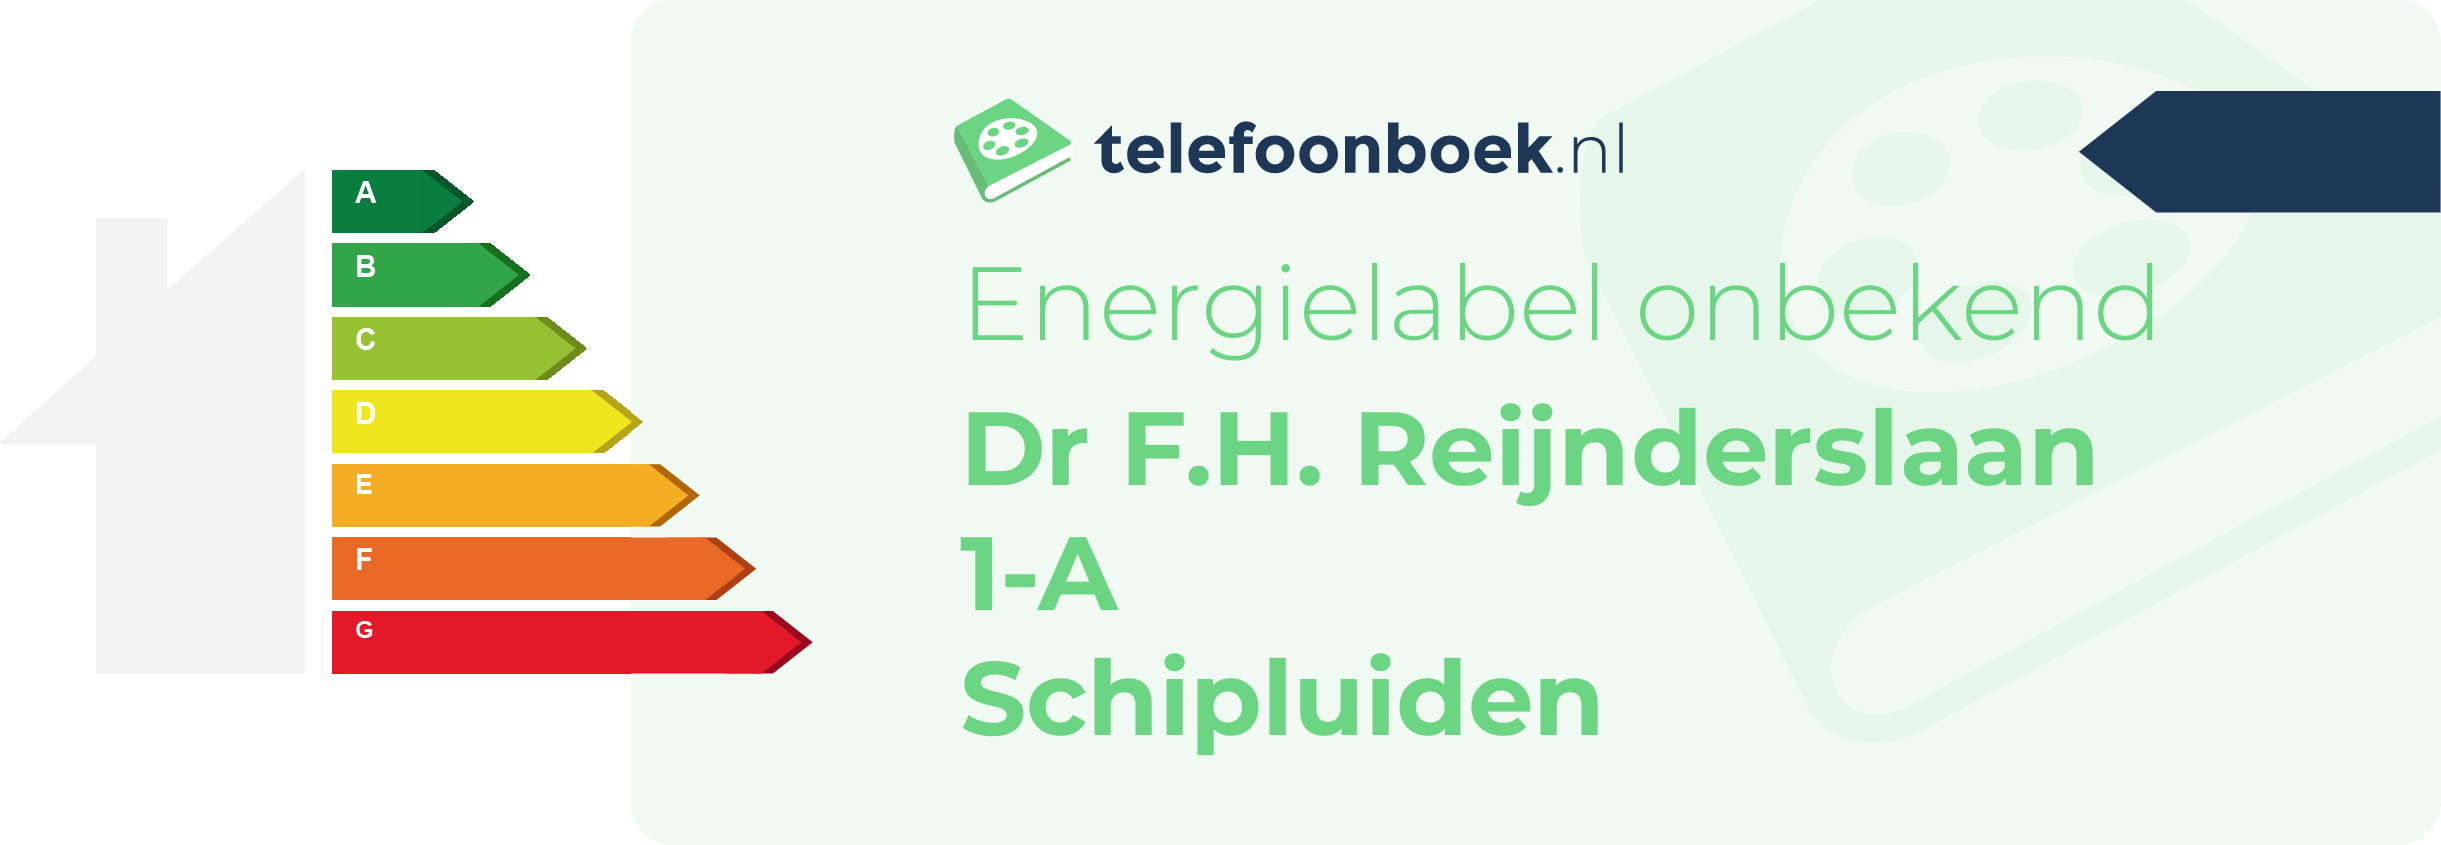 Energielabel Dr F.H. Reijnderslaan 1-A Schipluiden